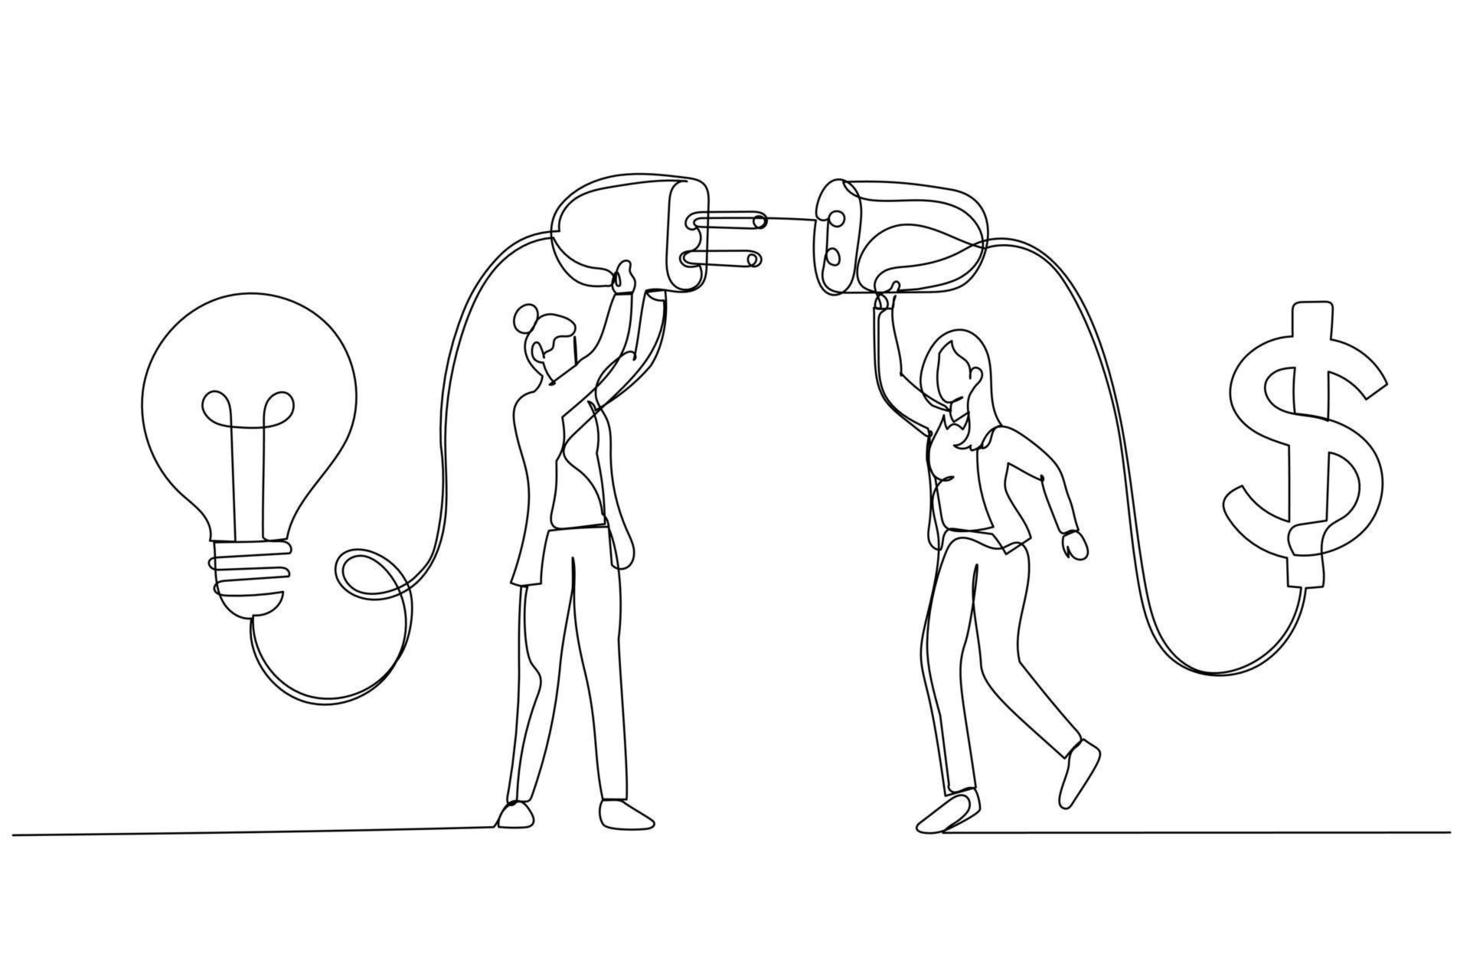 karikatur der geschäftsfrau verbinden glühbirne mit geld dollarzeichen konzept der finanziellen unterstützung. Kunststil mit einer durchgehenden Linie vektor